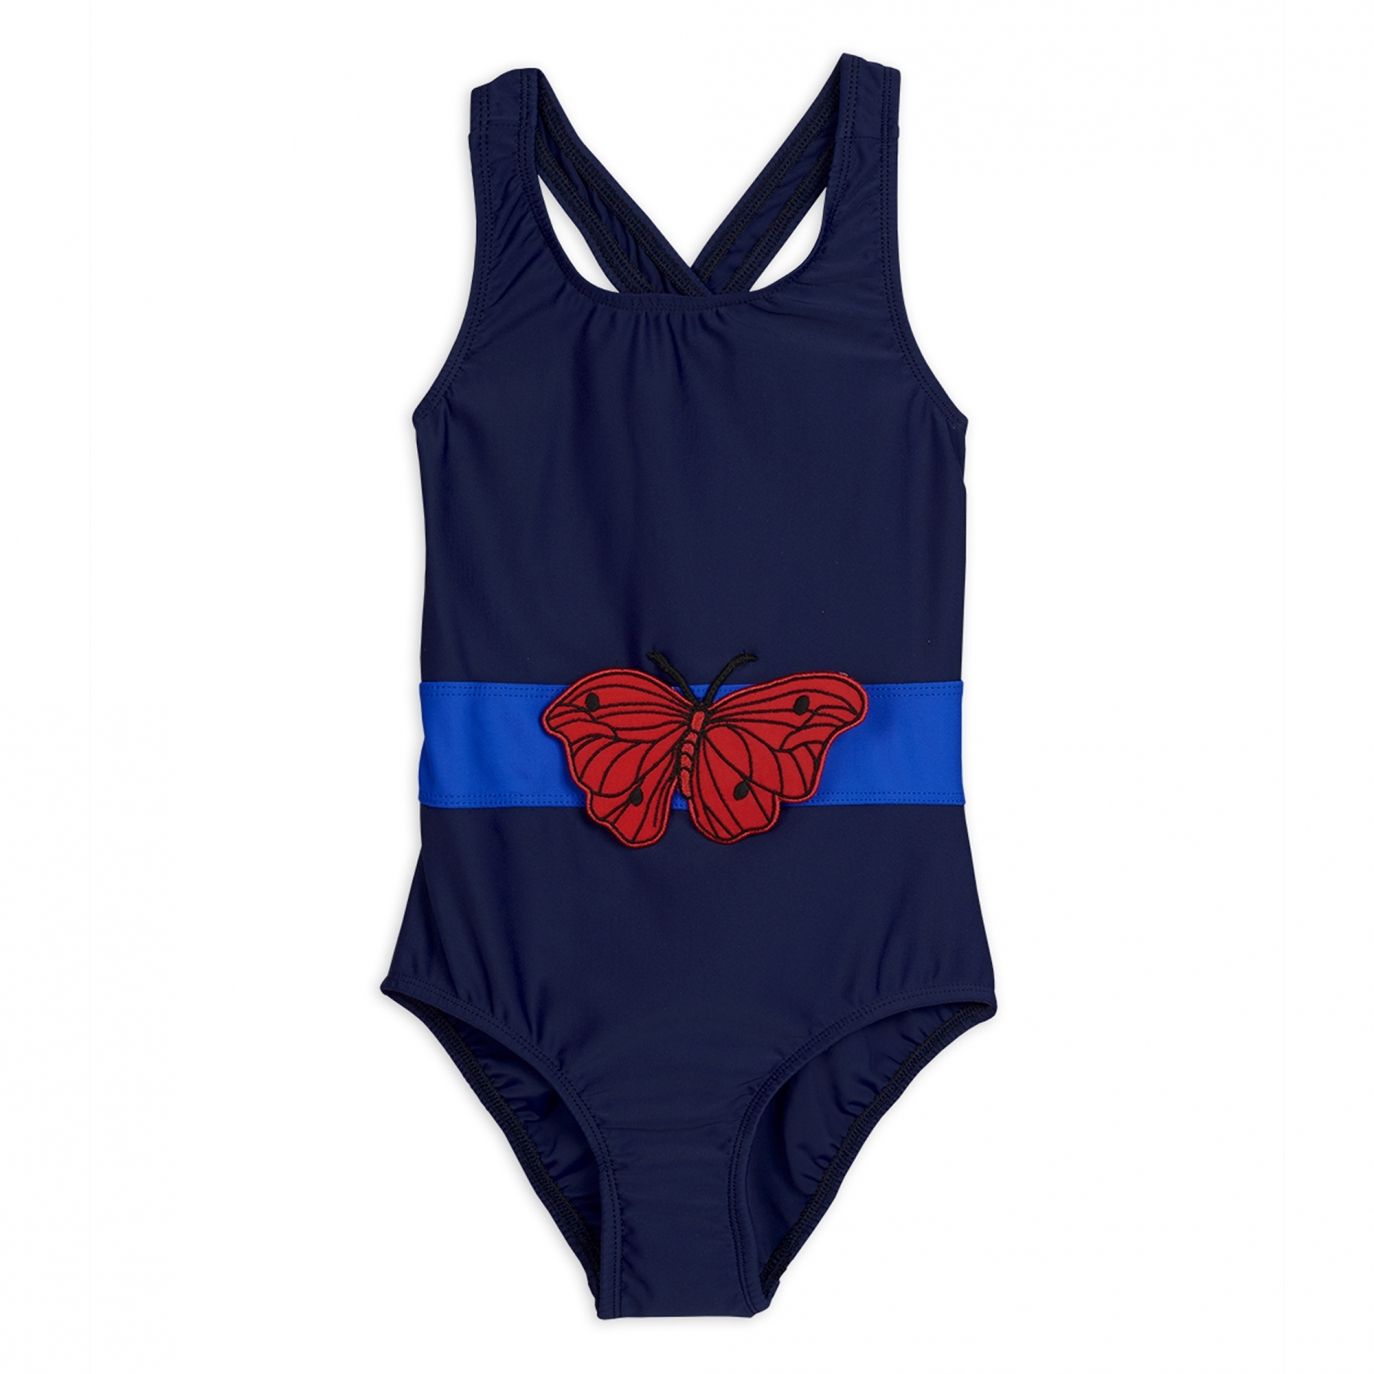 Mini Rodini - Strój kąpielowy Butterfly sporty swimsuit niebieski - 수영복 - 2028011267 